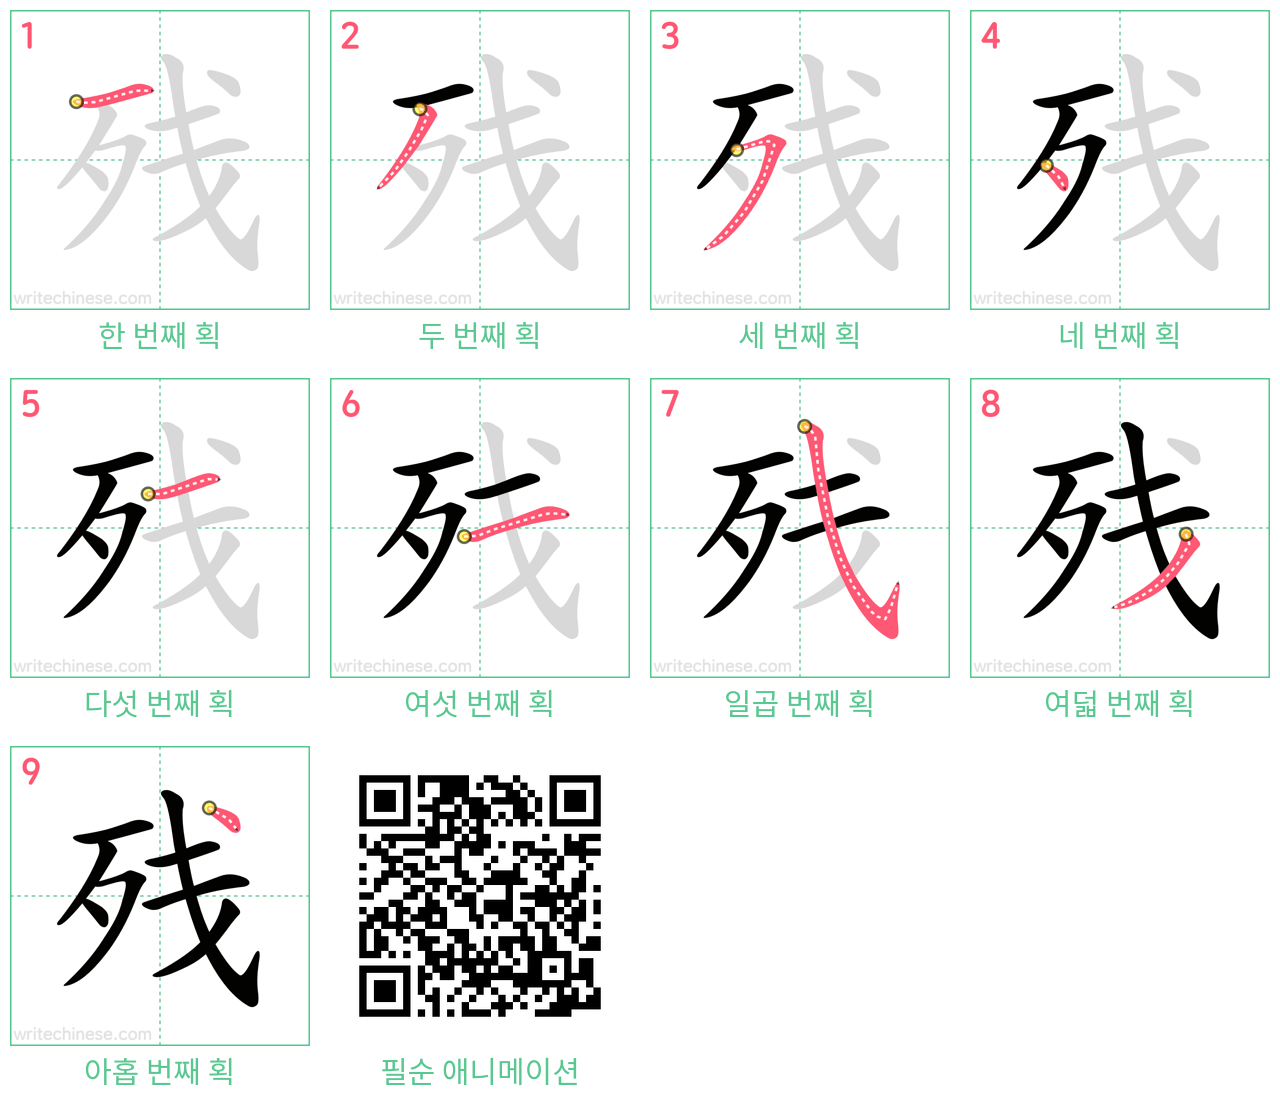 残 step-by-step stroke order diagrams